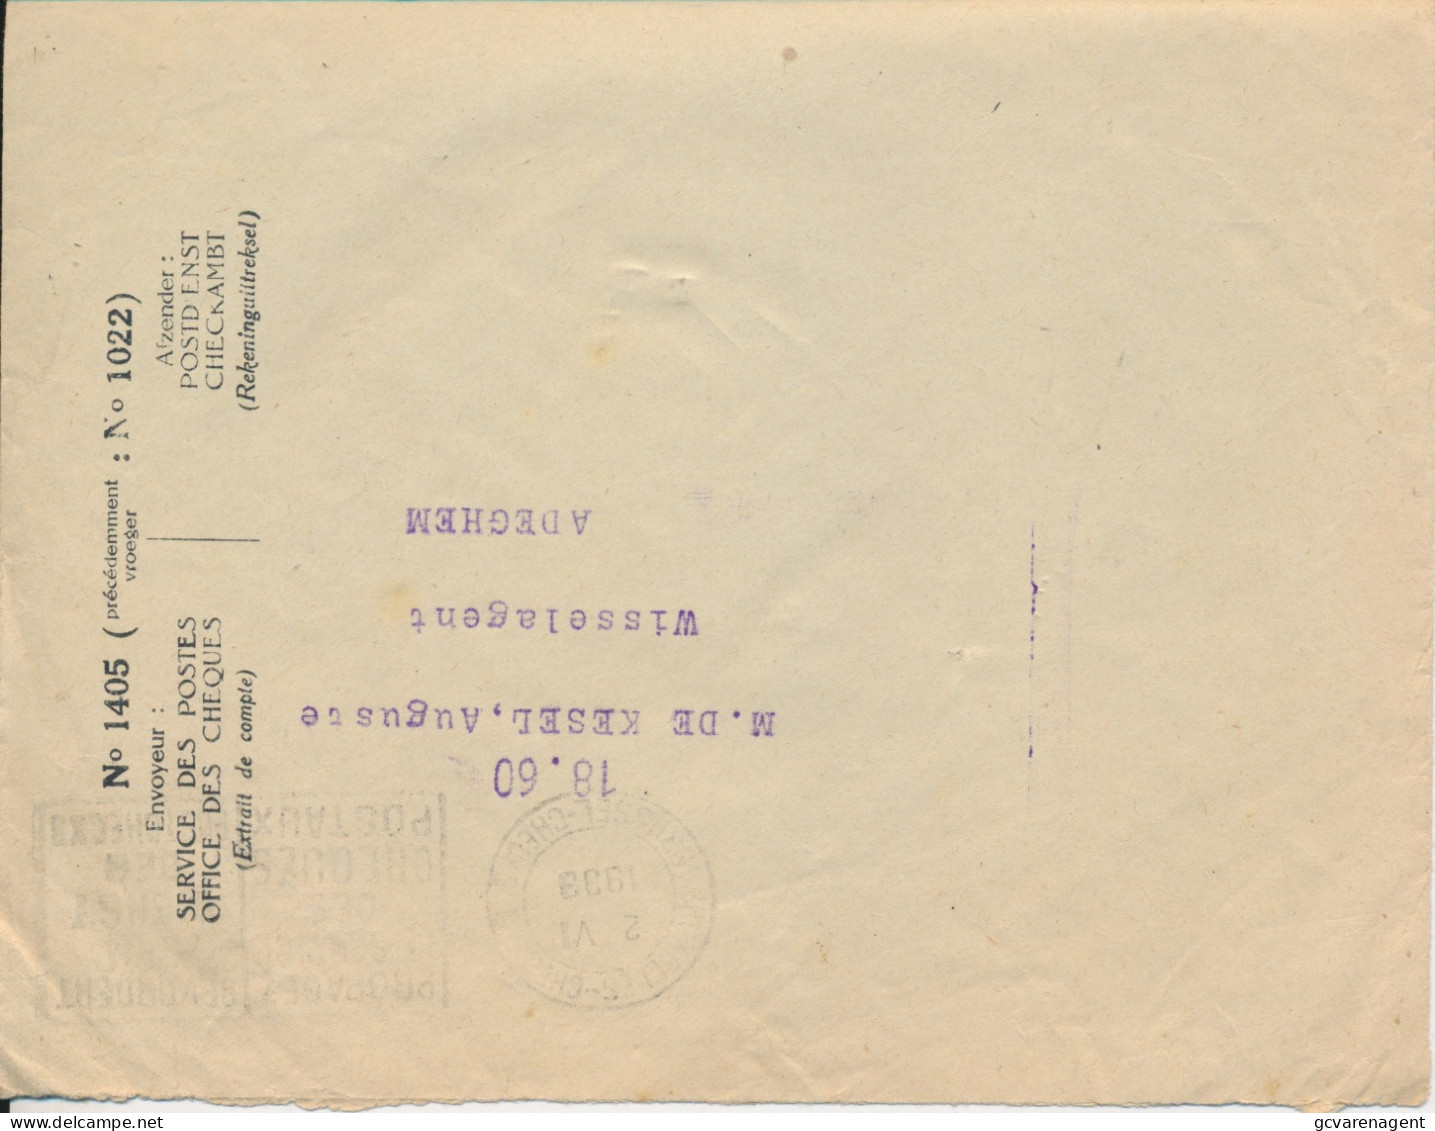 Old Envelope With Publicité 1933 Texaco Piston Oil Pour Graissage                 Farde - Enveloppes